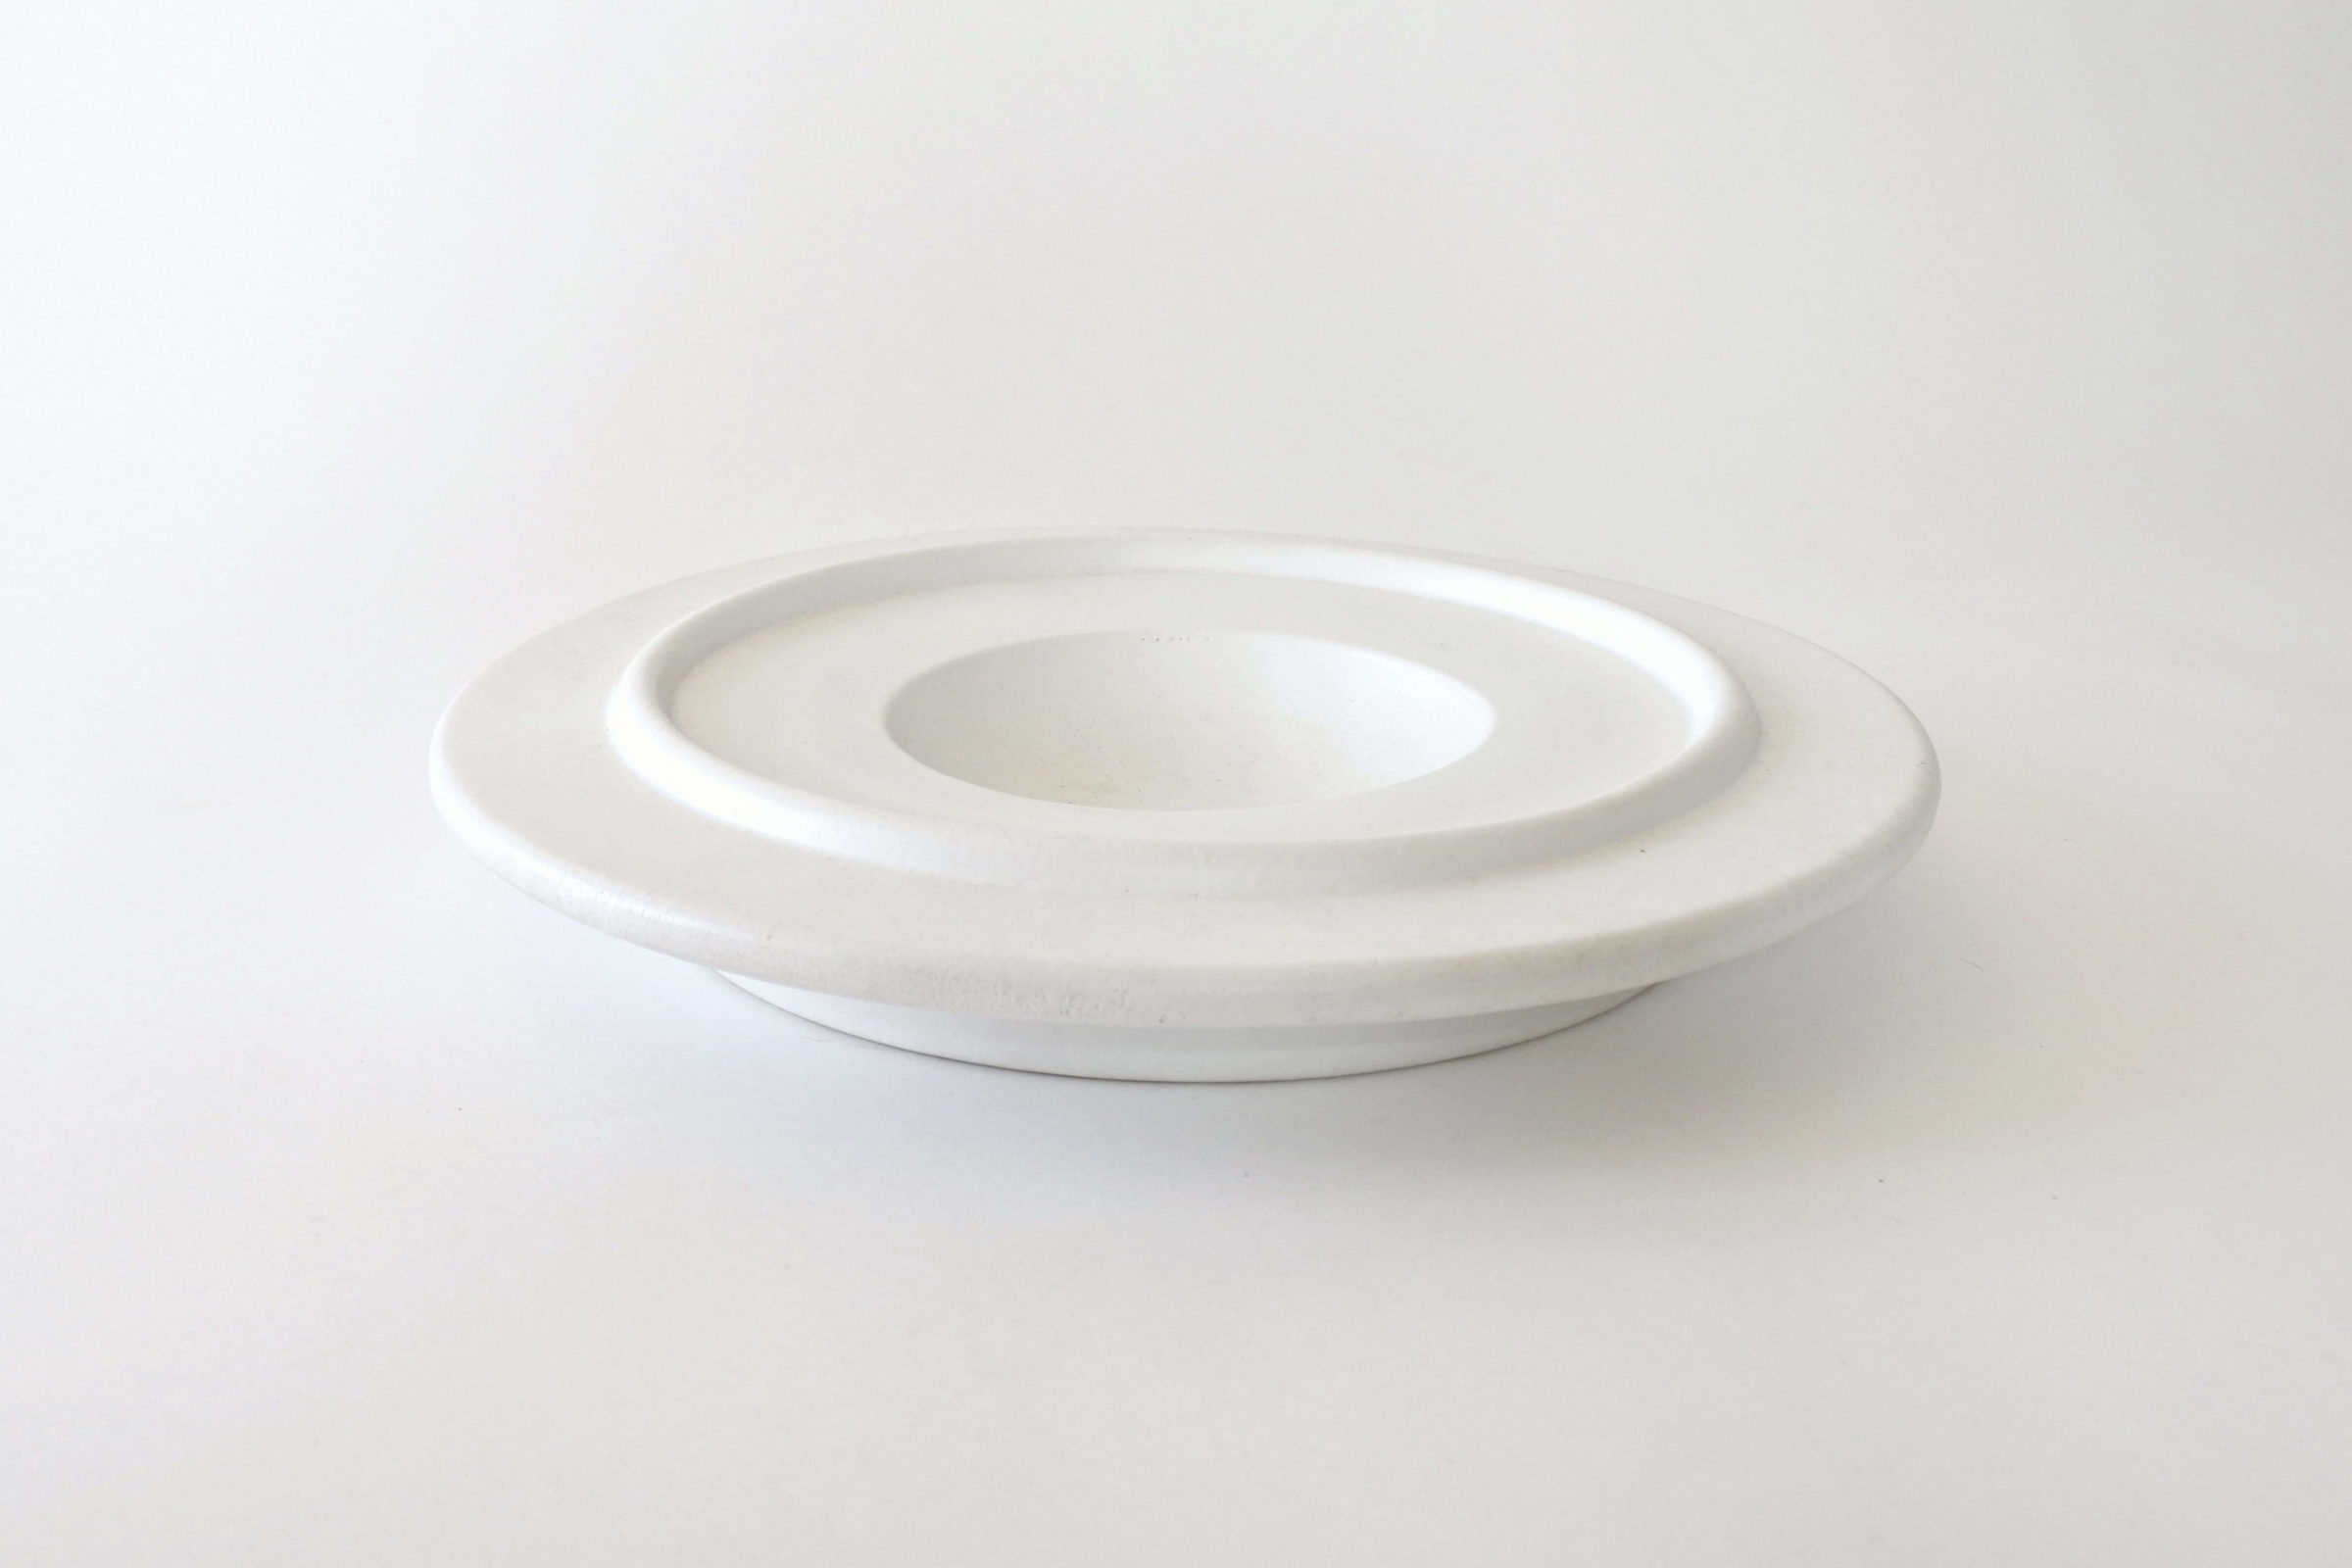 Centro tavola in ceramica bianca - Ettore Sottsass per ceramiche Bitossi - 2